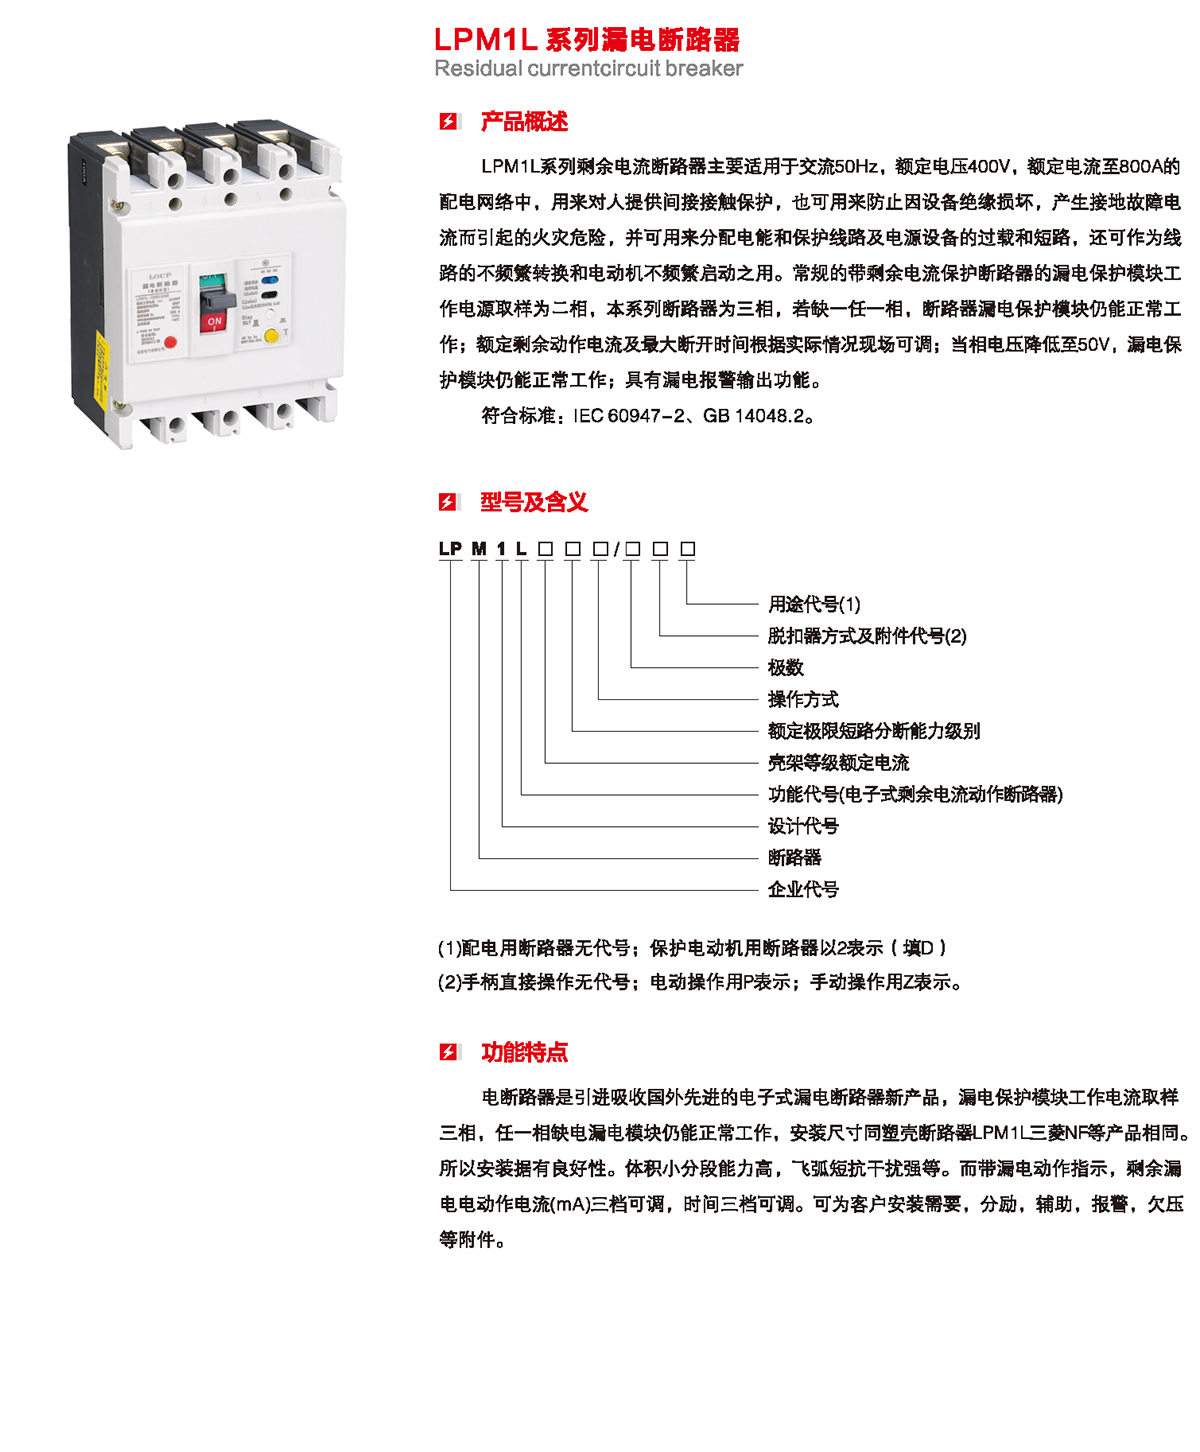 LPM1L系列漏电断路器产品概述、型号含义、功能特点